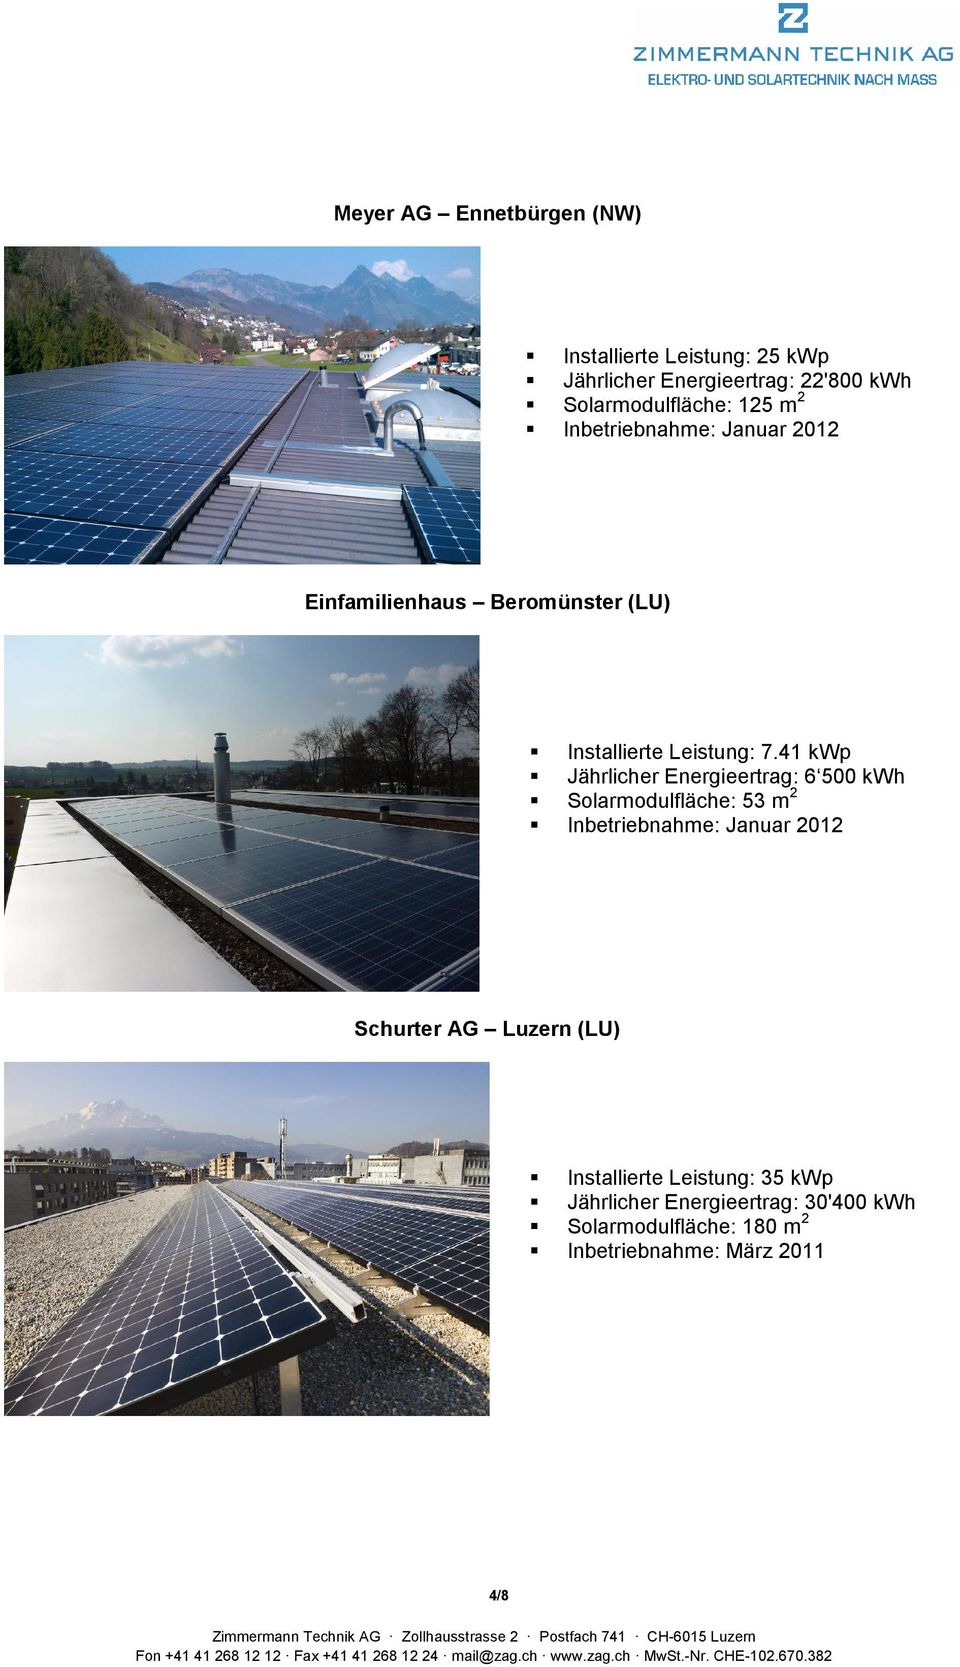 41 kwp Jährlicher Energieertrag: 6 500 kwh Solarmodulfläche: 53 m 2 Inbetriebnahme: Januar 2012 Schurter AG